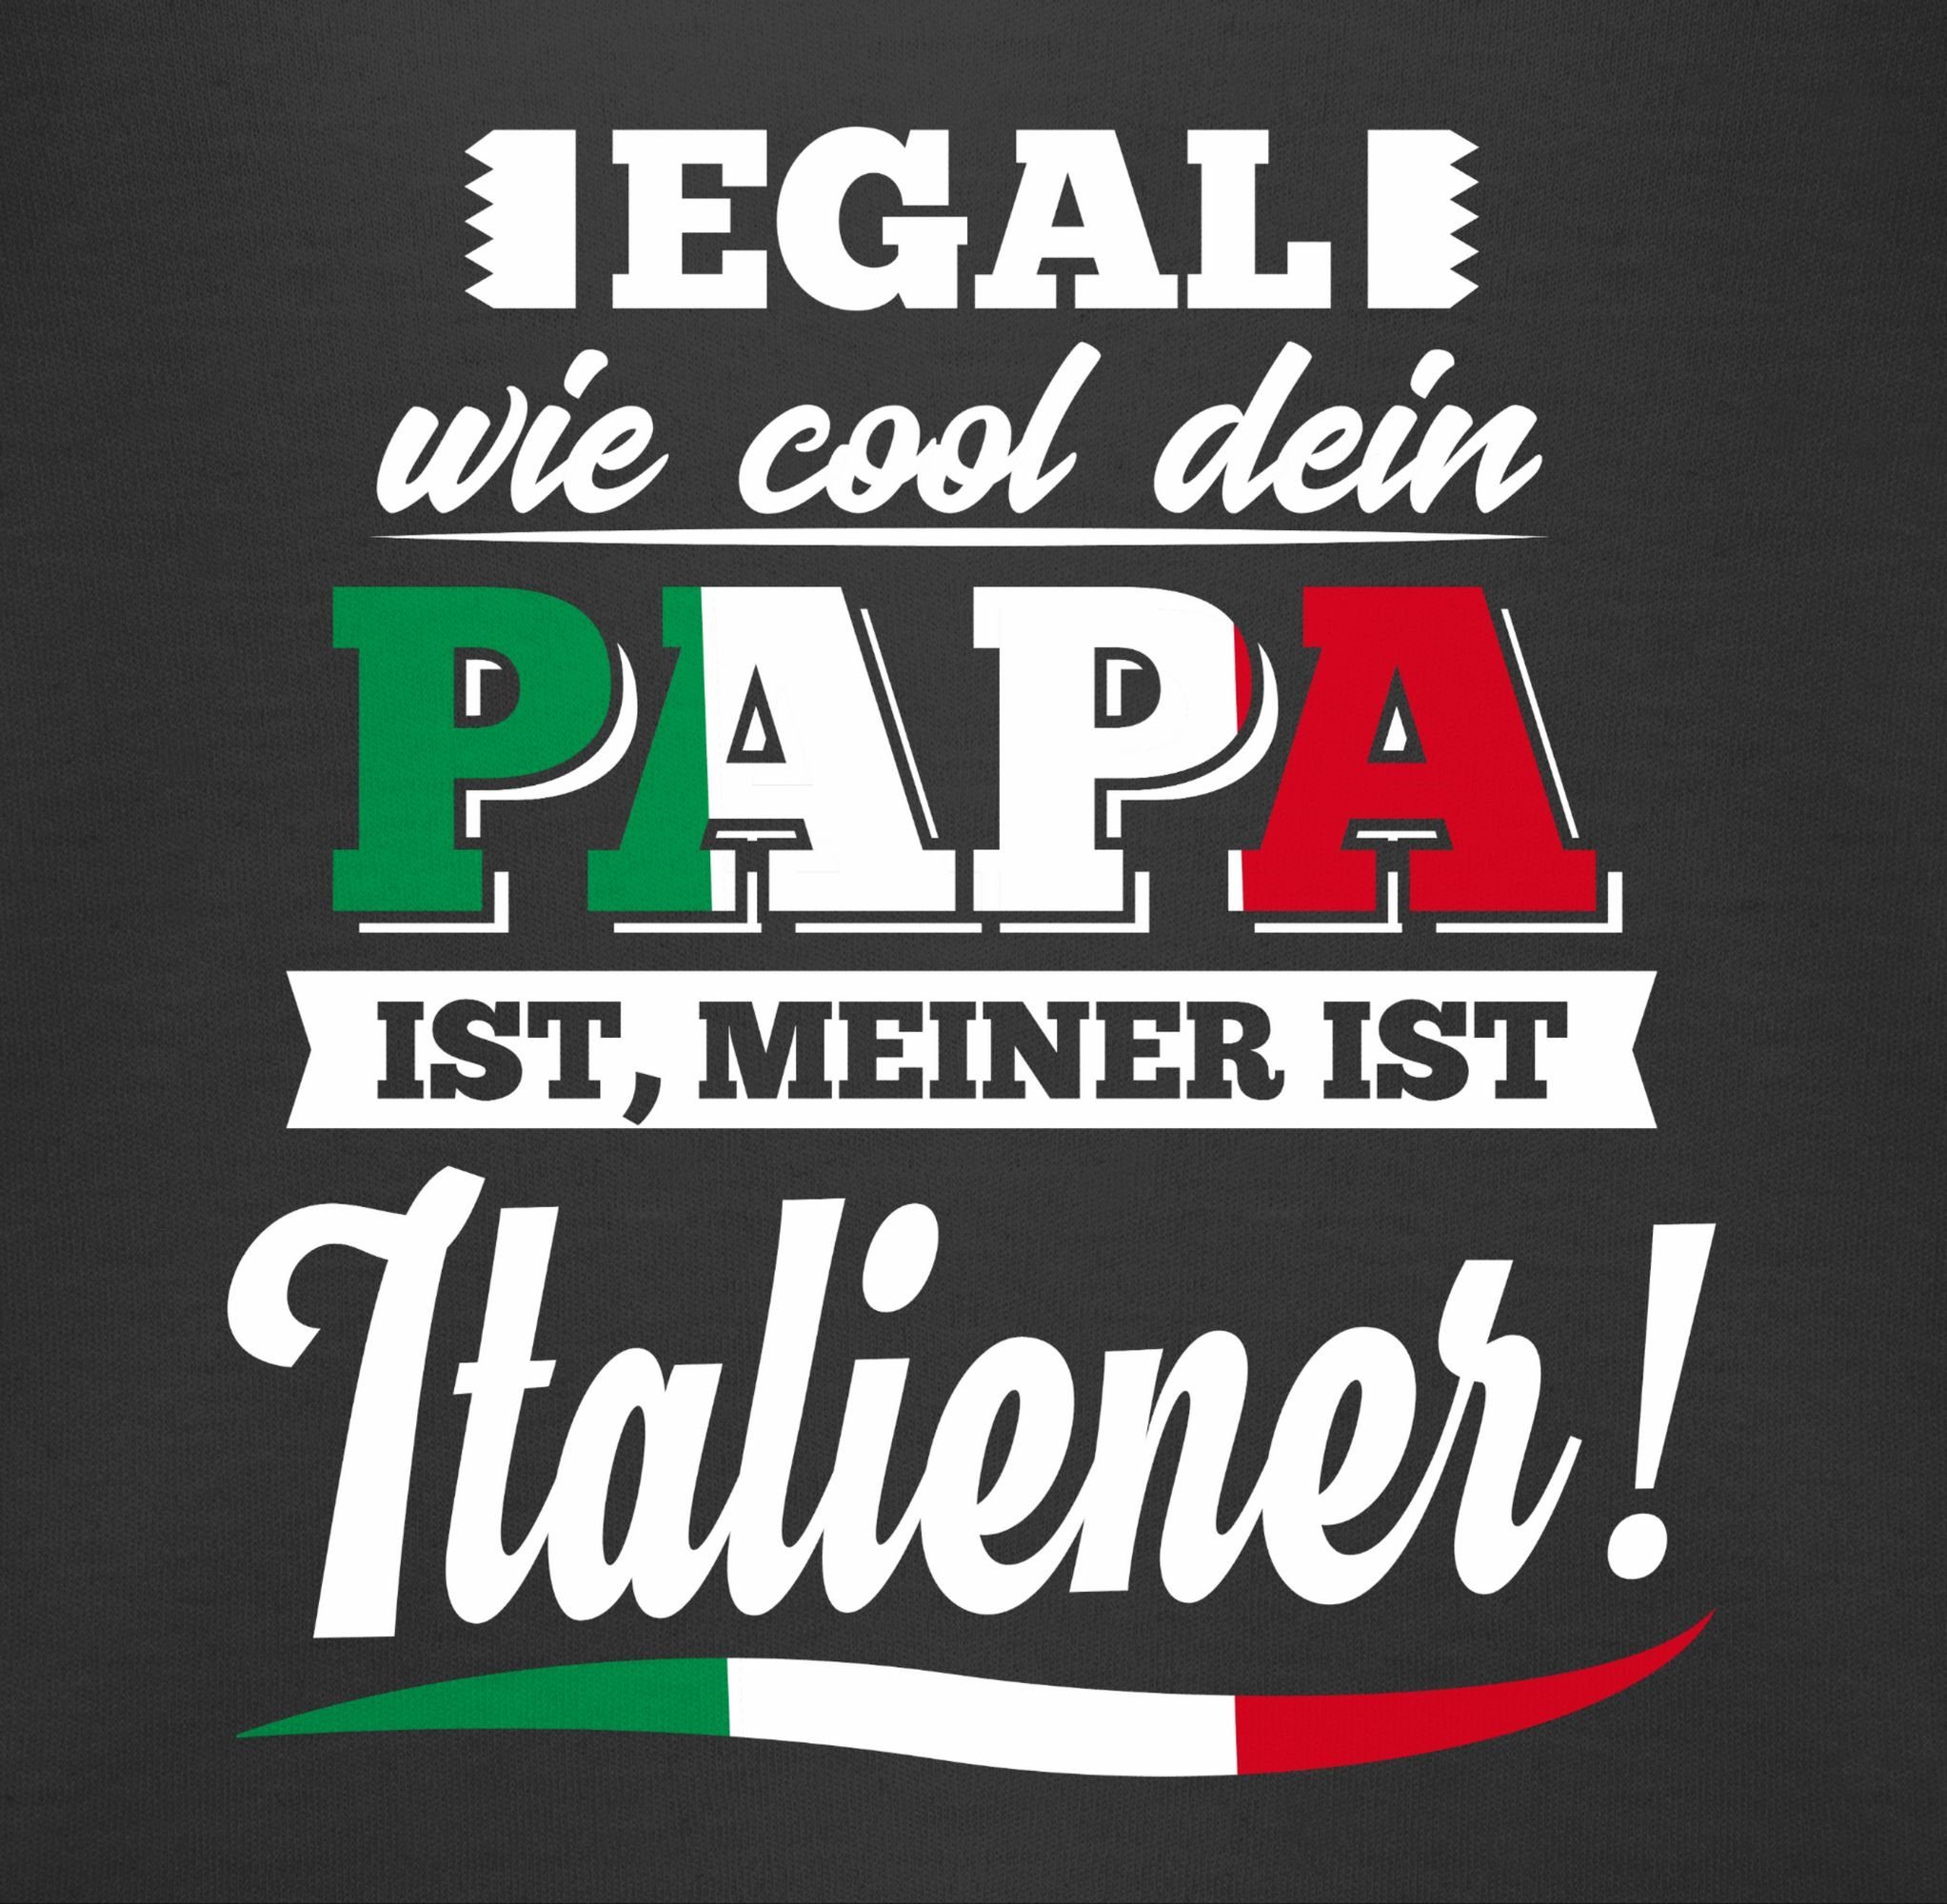 Baby Papa dein Egal Shirtracer meiner ist Shirtbody wie Sprüche 1 Cool Schwarz Italiener